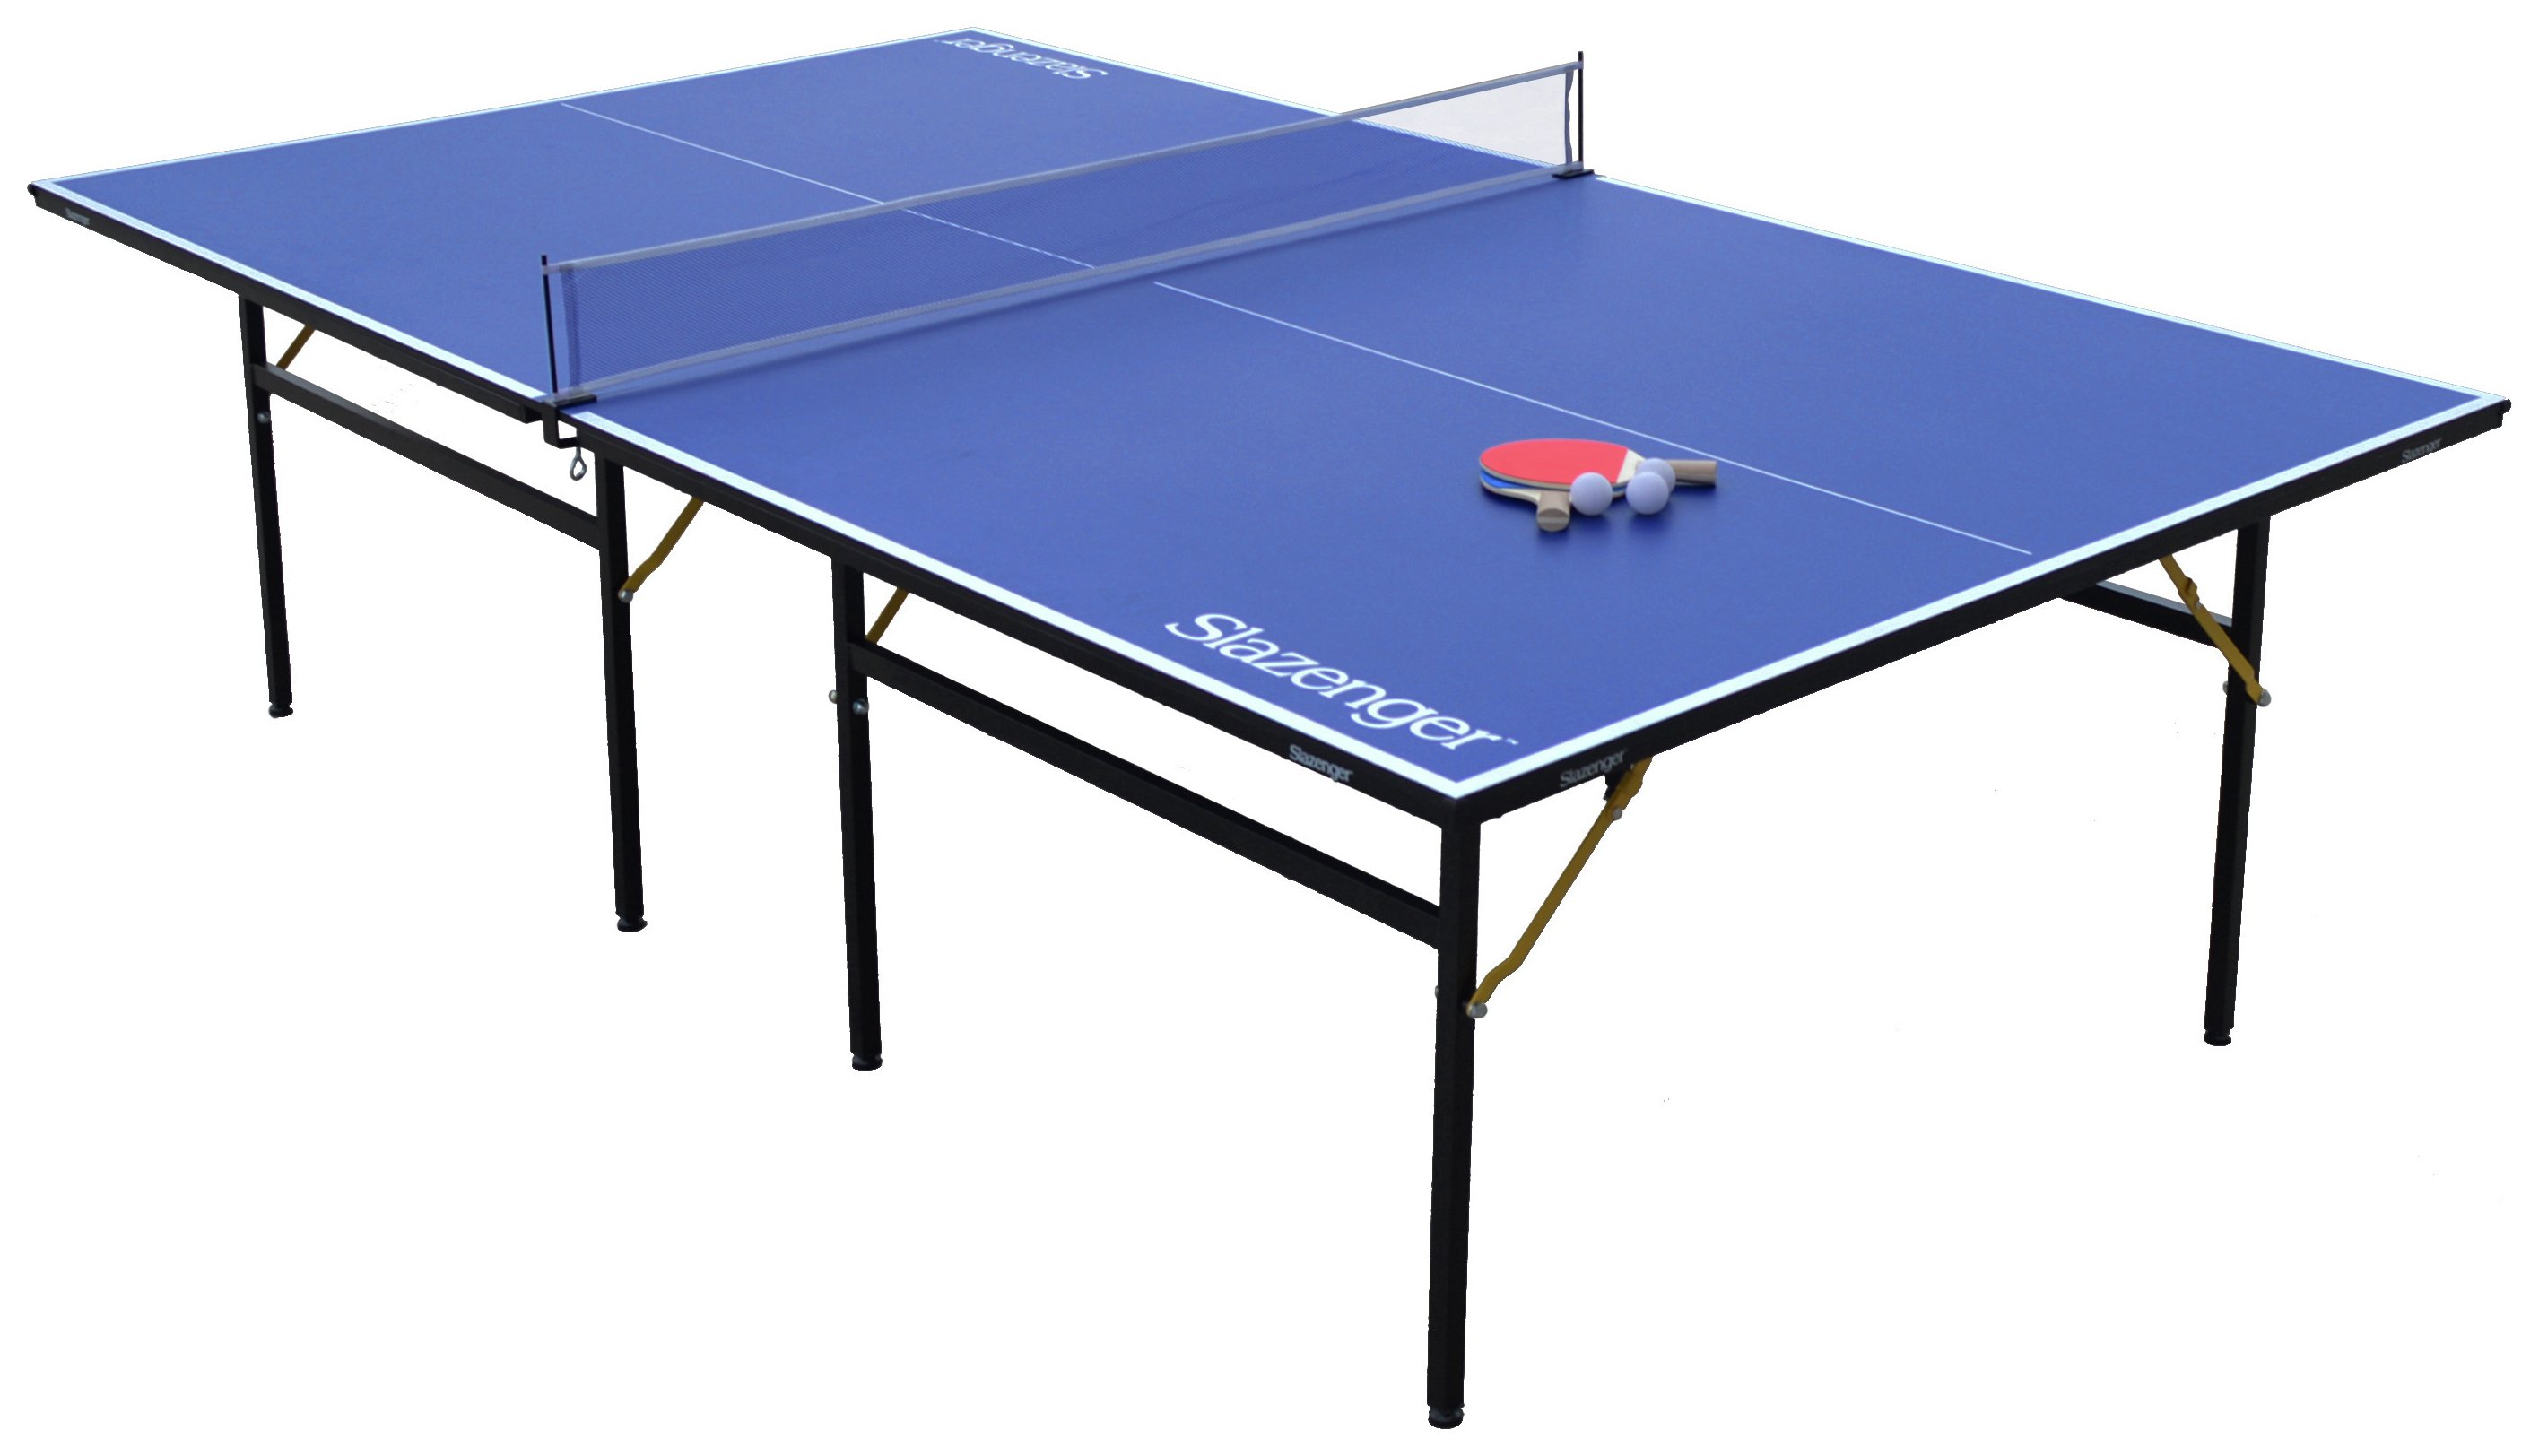 Slazenger 9ft Indoor Table Tennis Table